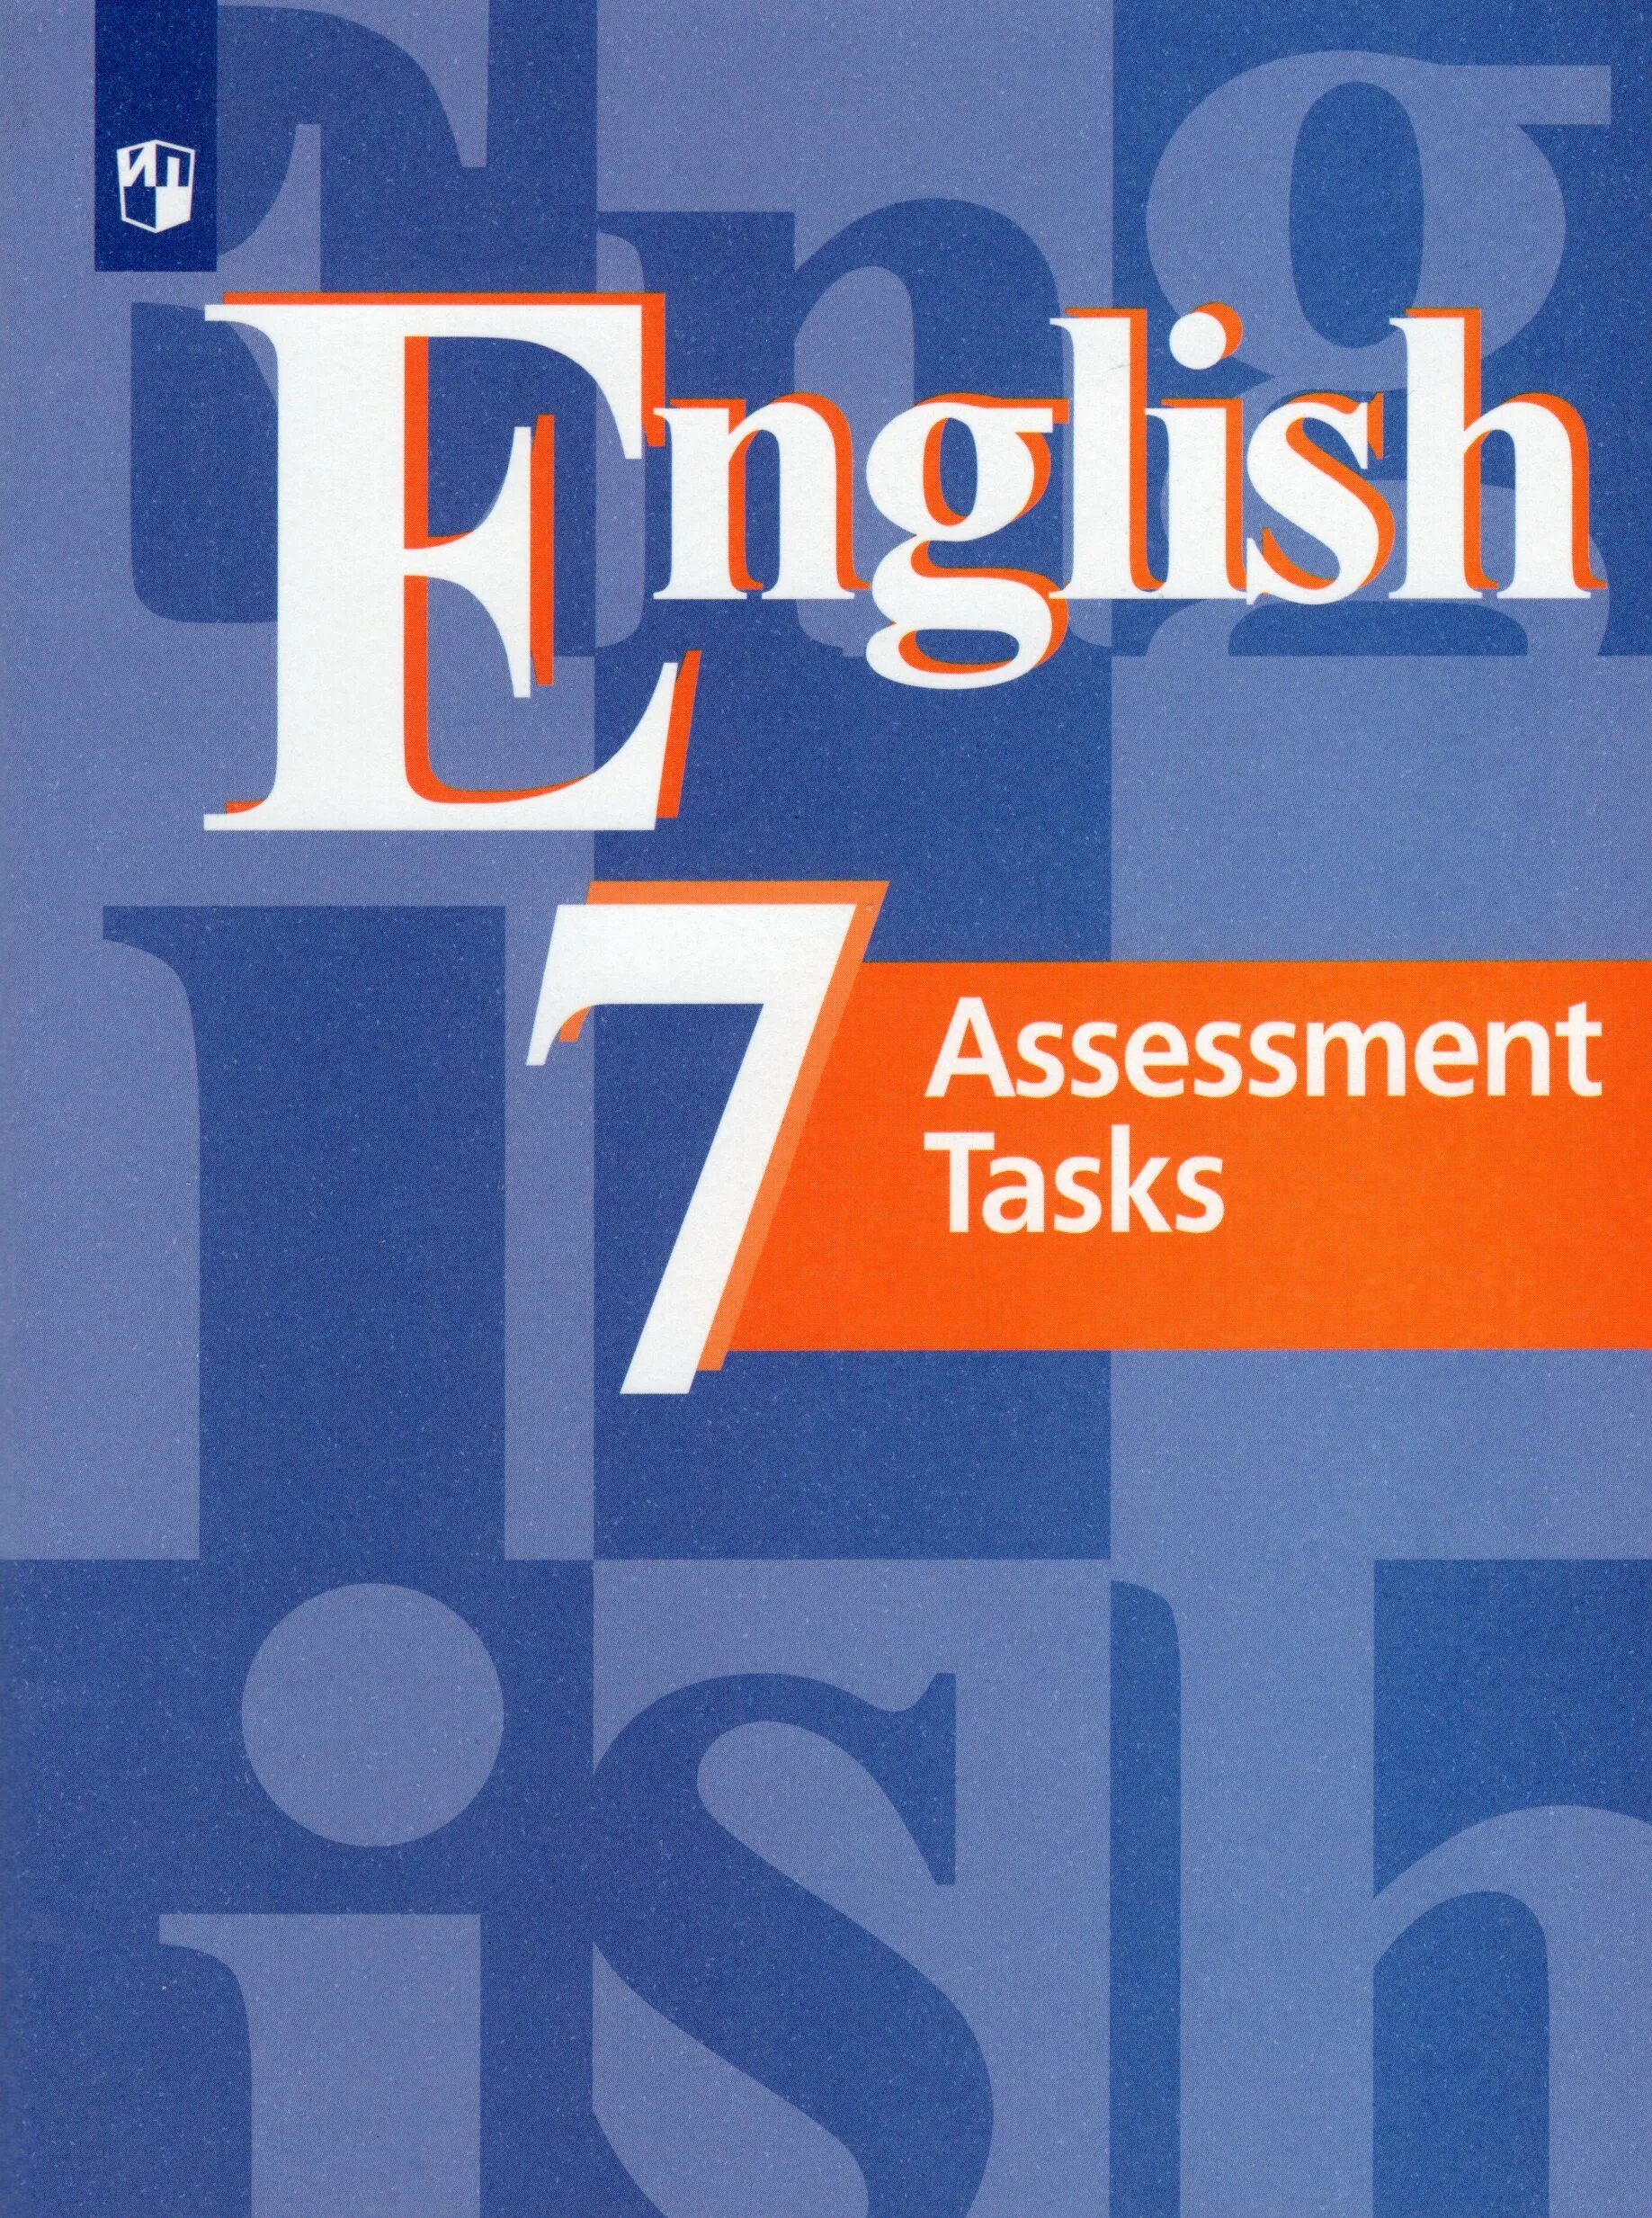 Английский 7 класс new. Английский язык 7 класс контрольные задания кузовлев. Английский язык кузовлев 7 класс Assessment. Английский язык 7 класс Assessment tasks. Английский язык 7 класс кузовлёв Assessment tasks.